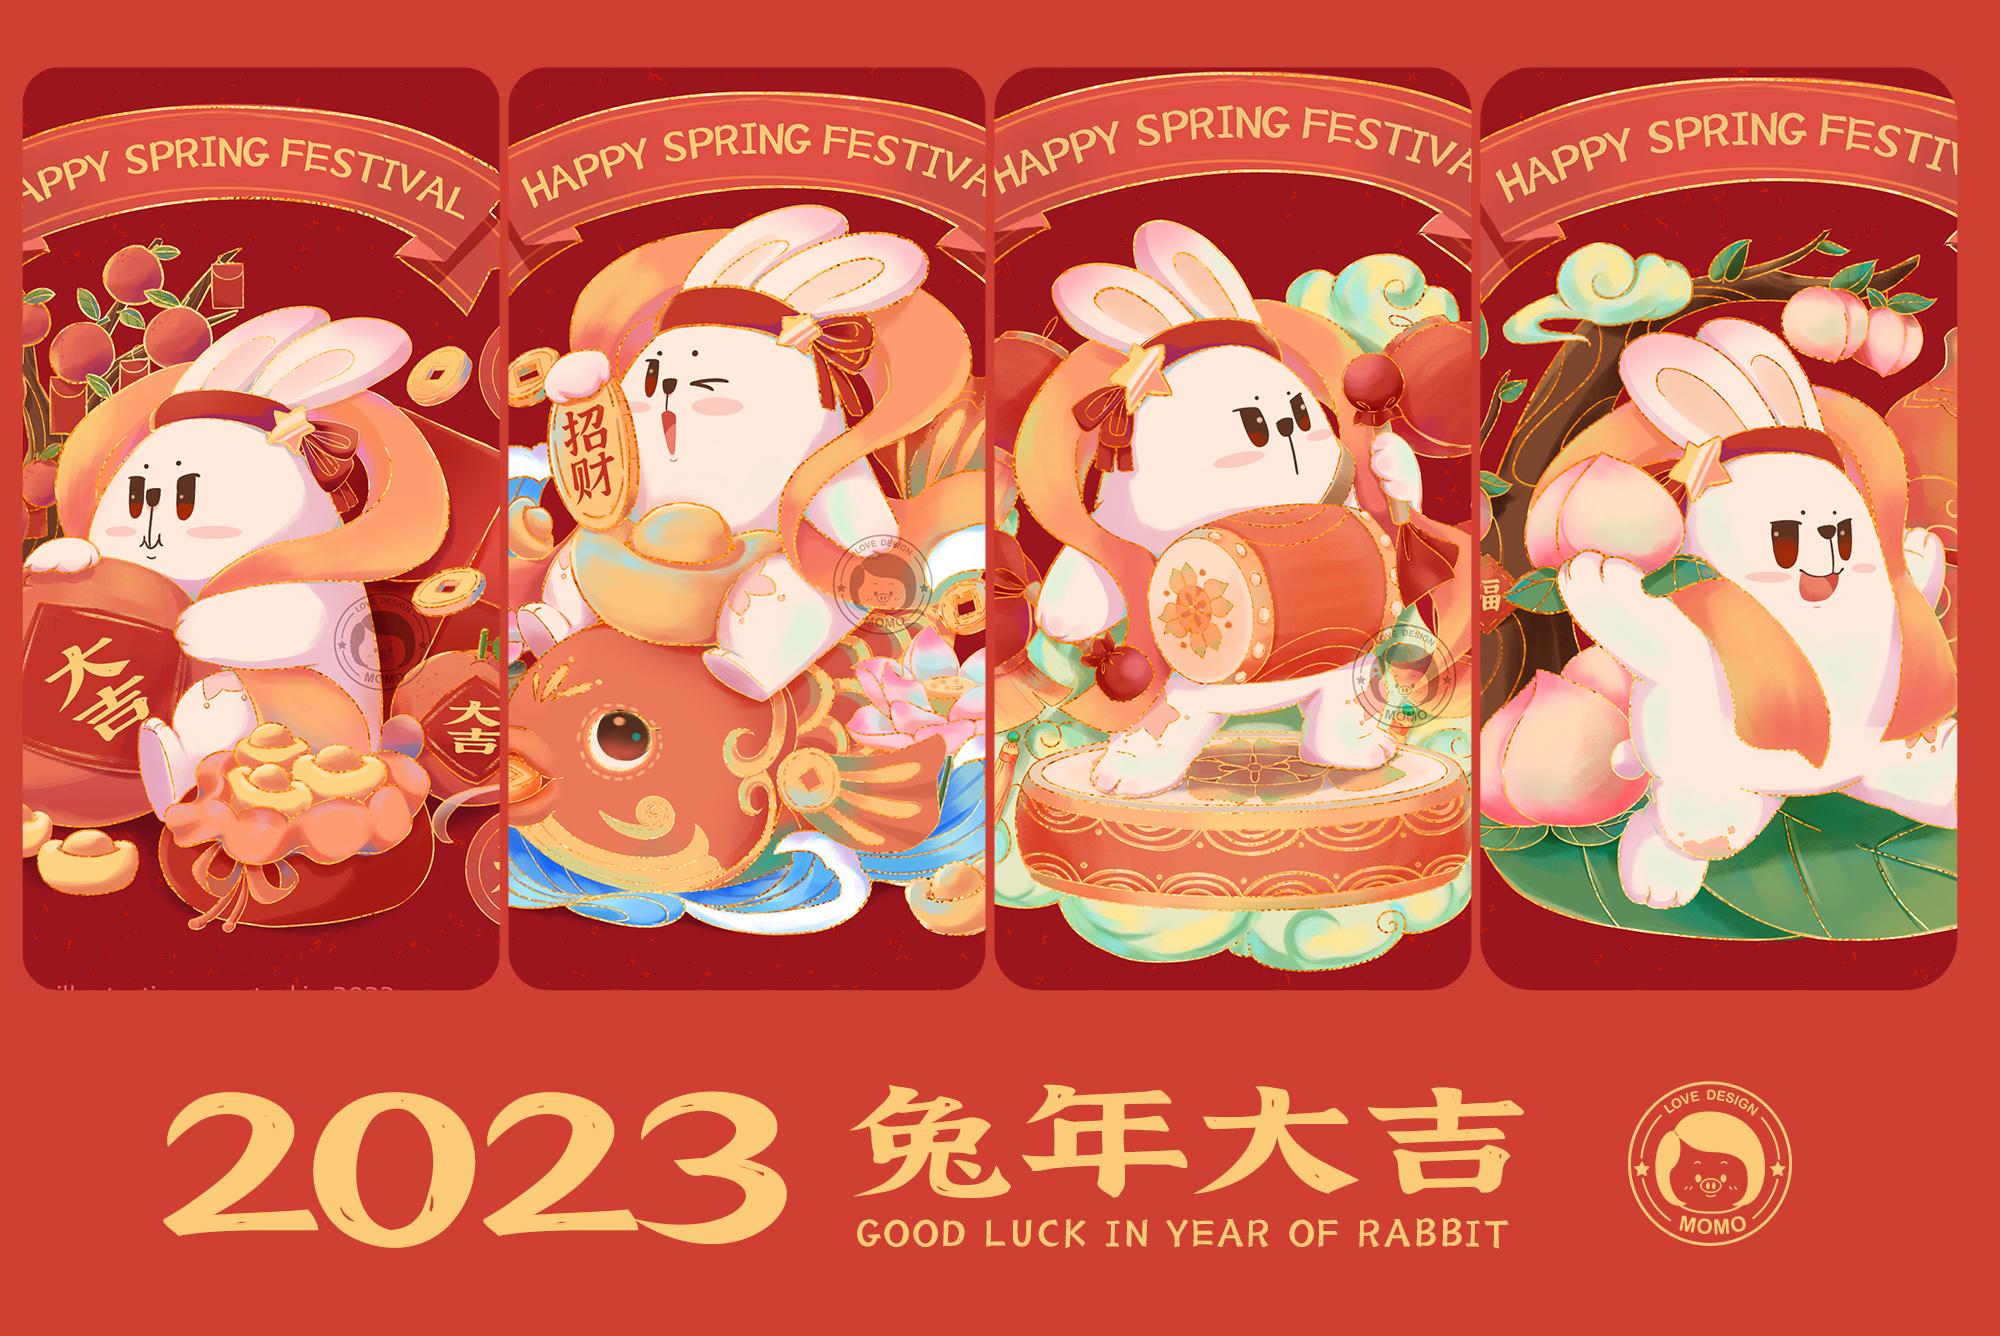 2023年萌兔送祝福系列插画欣赏,结合新春祝福语为基础的文创图案绘制